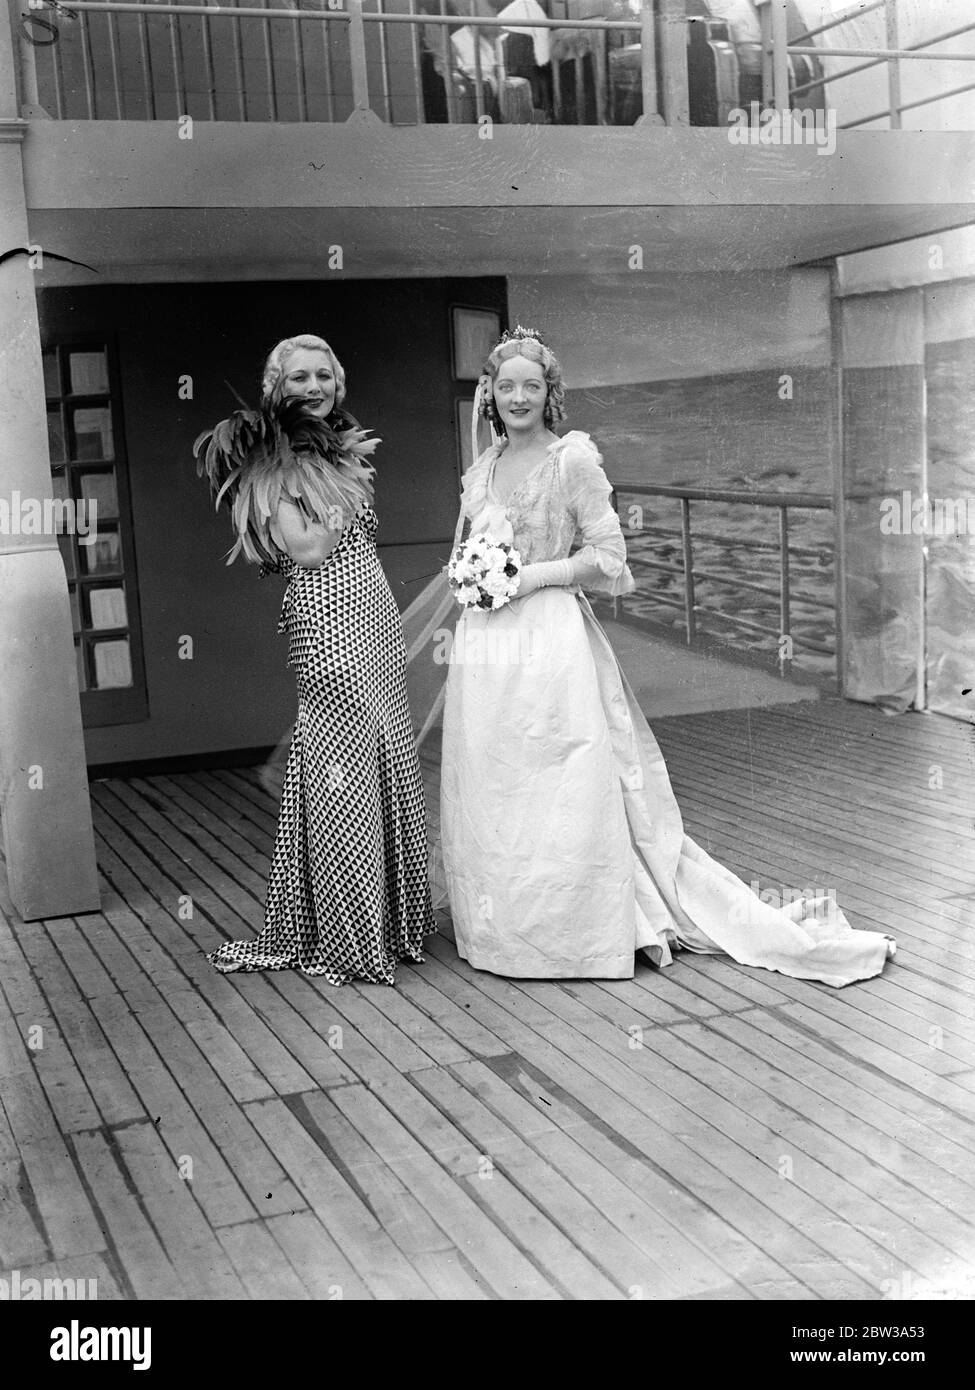 Mädchen mit sechzehn Zoll Taille trägt 1863 Hochzeitskleid bei Whiteley ' s Geburtstagsfeier . All Paddington feiert den 71. Geburtstag von Whiteley ' s, eines der berühmtesten Kaufhäuser Londons. Ein Merkmal der Feierlichkeiten war eine "Cavalcade of Fashion", in dem über fünfzig der Welt "schönsten Mannequins zeigten Veränderungen in der weiblichen Kleidung seit 1863. Unter ihnen waren Miss Diana Vawsher, deren sechzehn Zoll Taille ermöglicht ihr, ein Brautkleid 1863 tragen. Foto zeigt, Miss Diana Vawsher trägt das Brautkleid 1863. Mit ihr ist ein Mädchen, das eine moderne Mode trägt. 30. April 19 Stockfoto